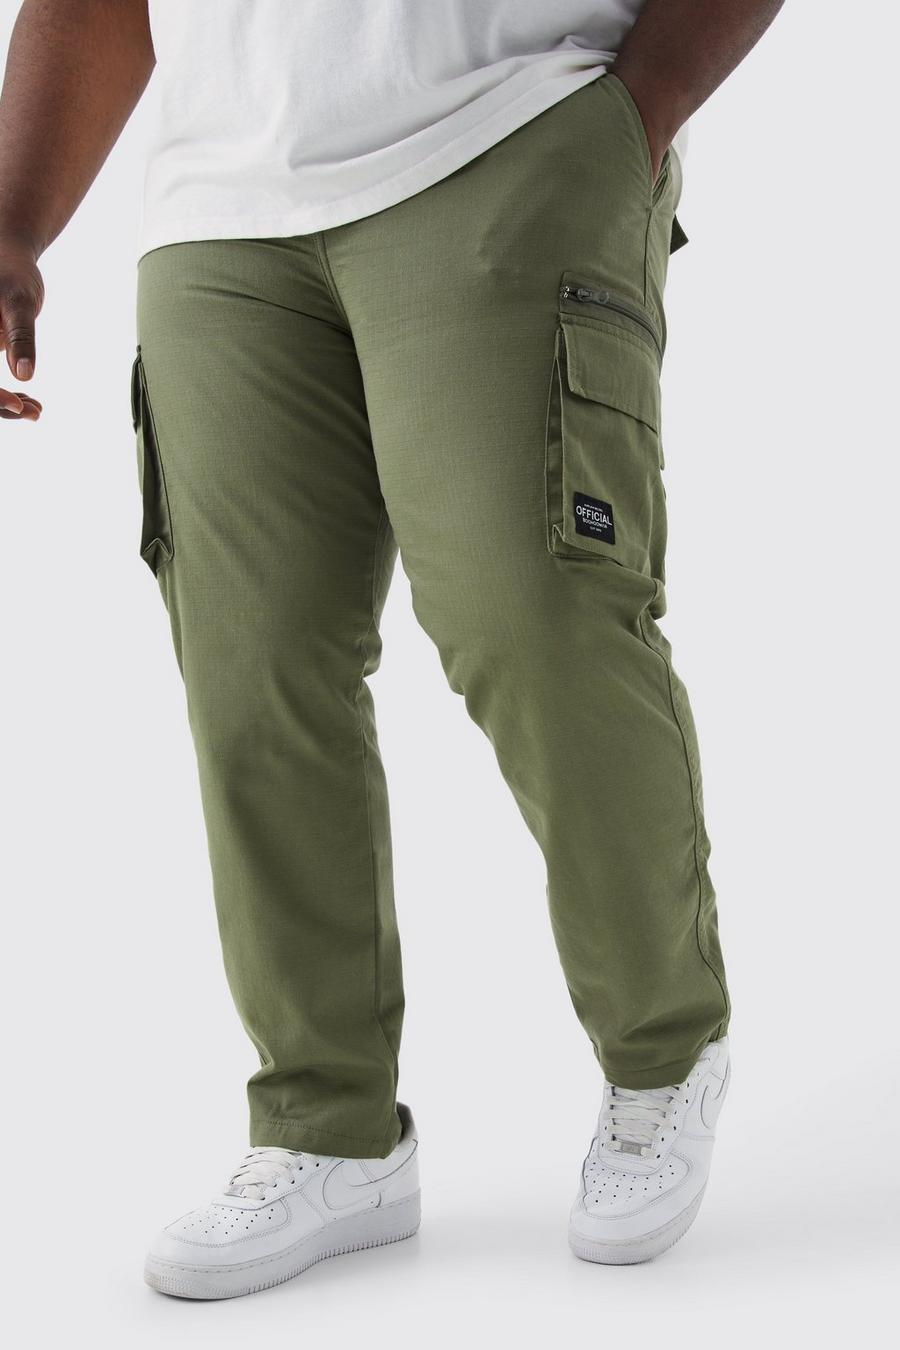 Pantaloni Cargo Plus Size fissi rilassati in nylon ripstop con etichetta, Khaki image number 1